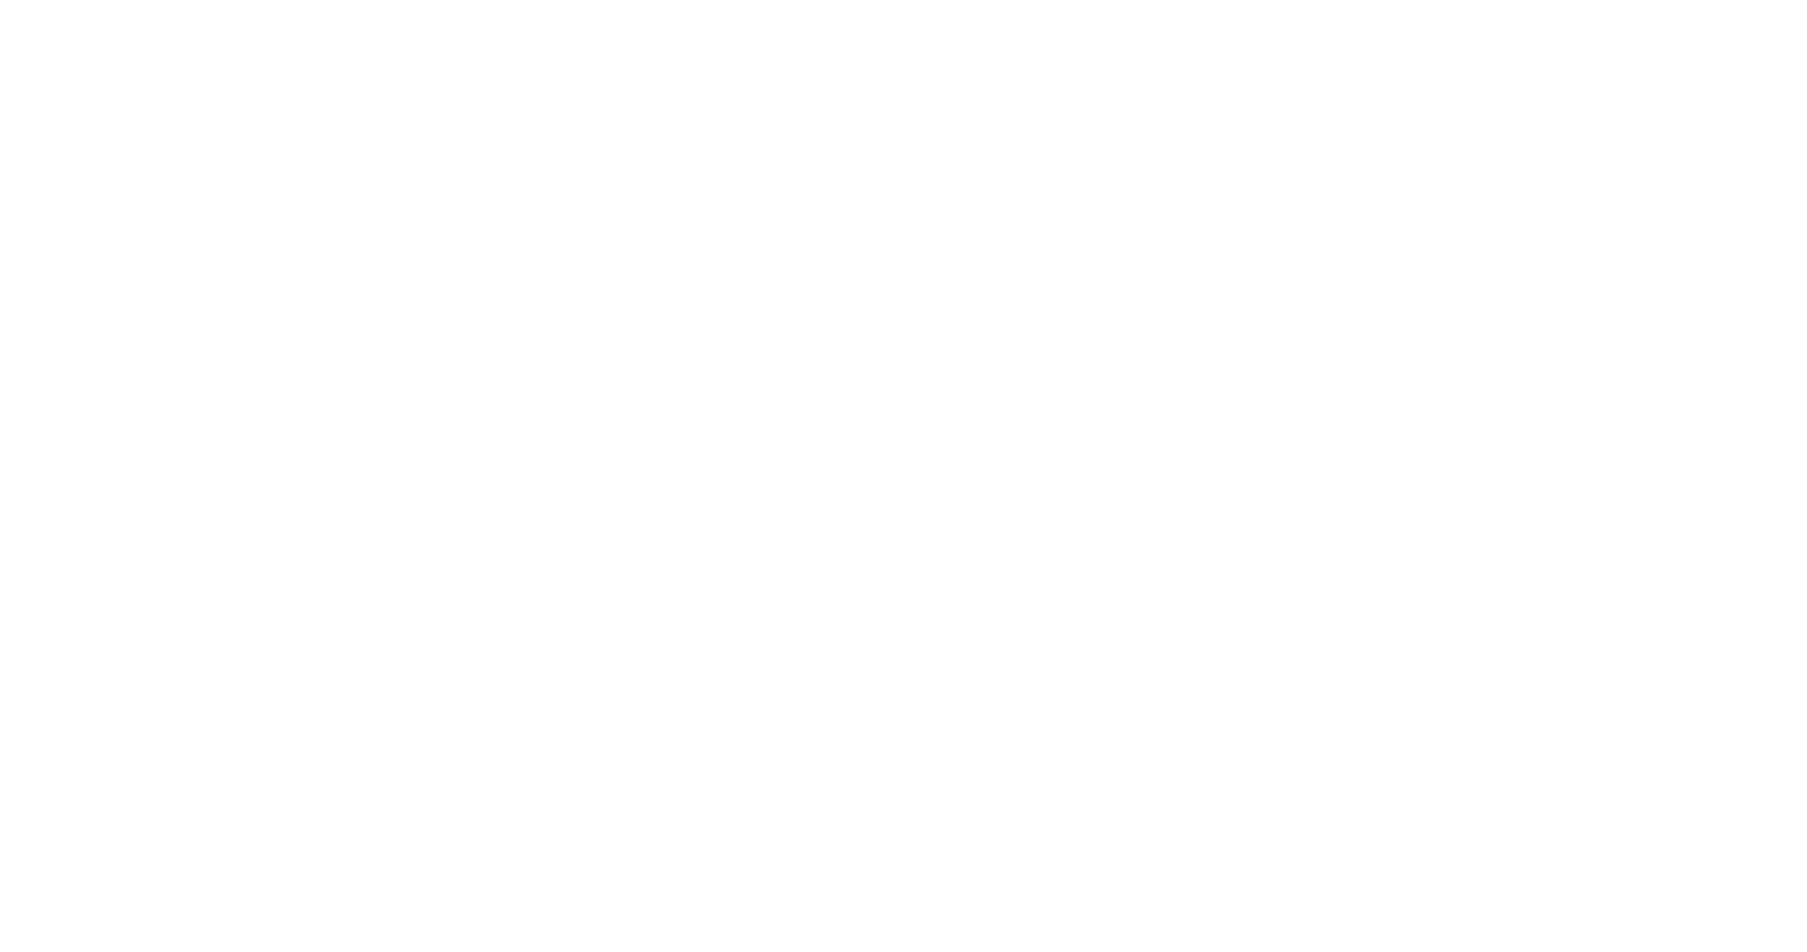 Food Scraps Pickup Program